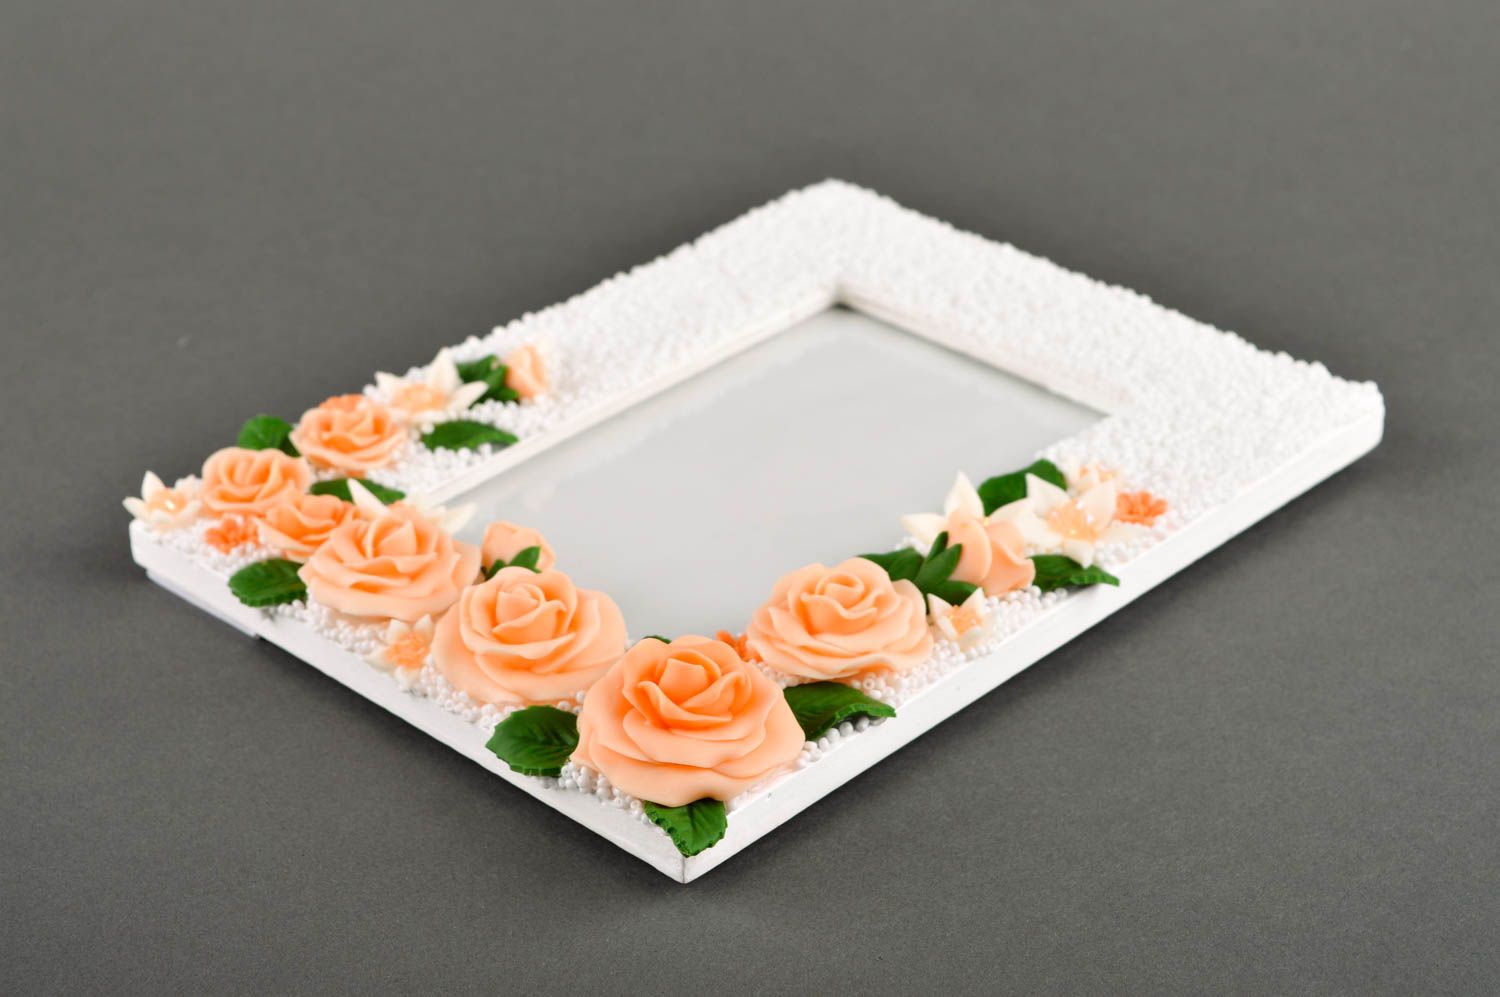 Фоторамка ручной работы рамка для фото белая деревянная фоторамка с розами фото 3